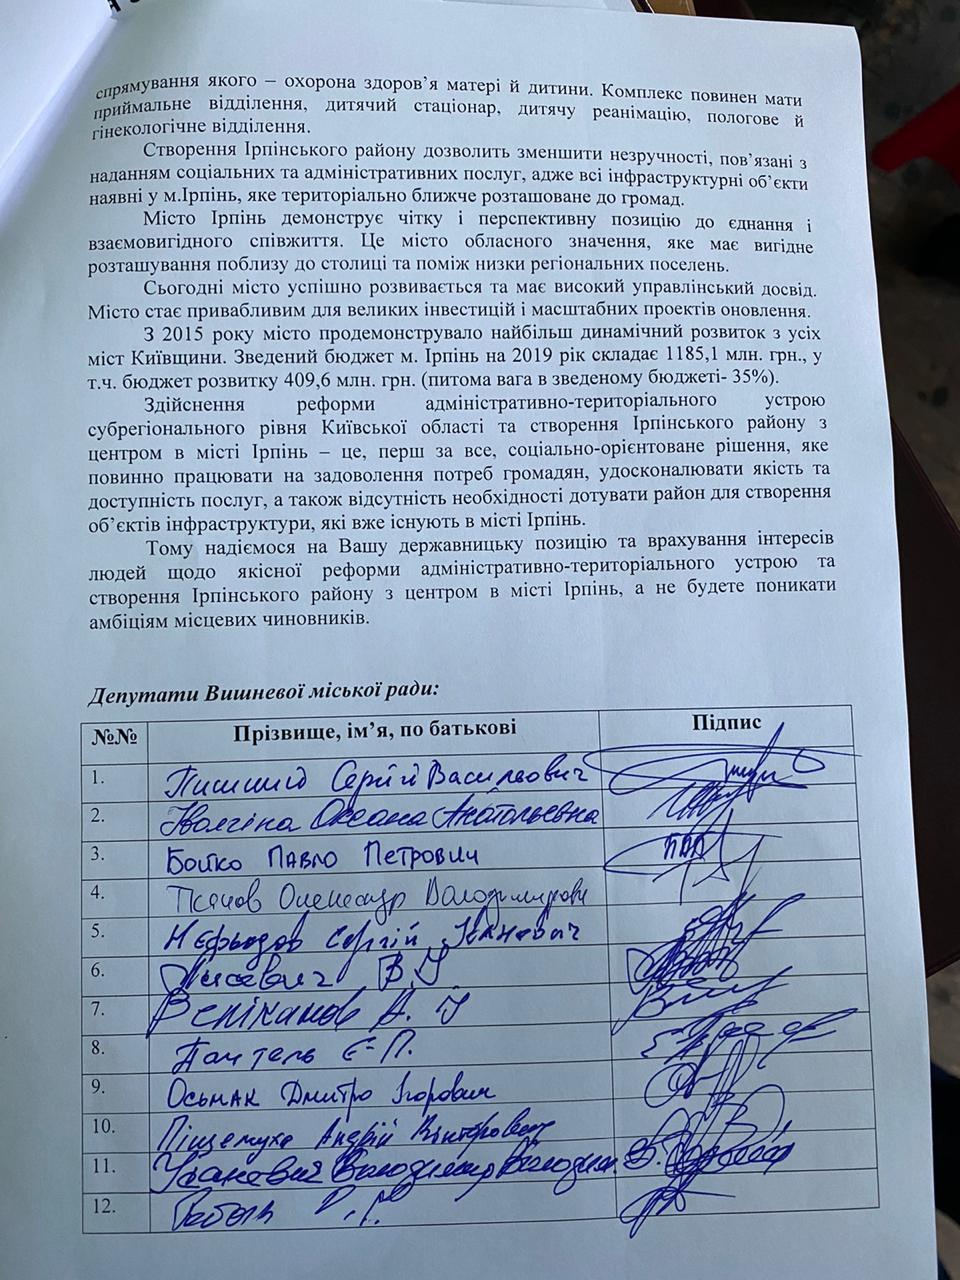 На Киевщине собирают подписи против перенесения административного центра Ирпенского района в Бучу - фото 3